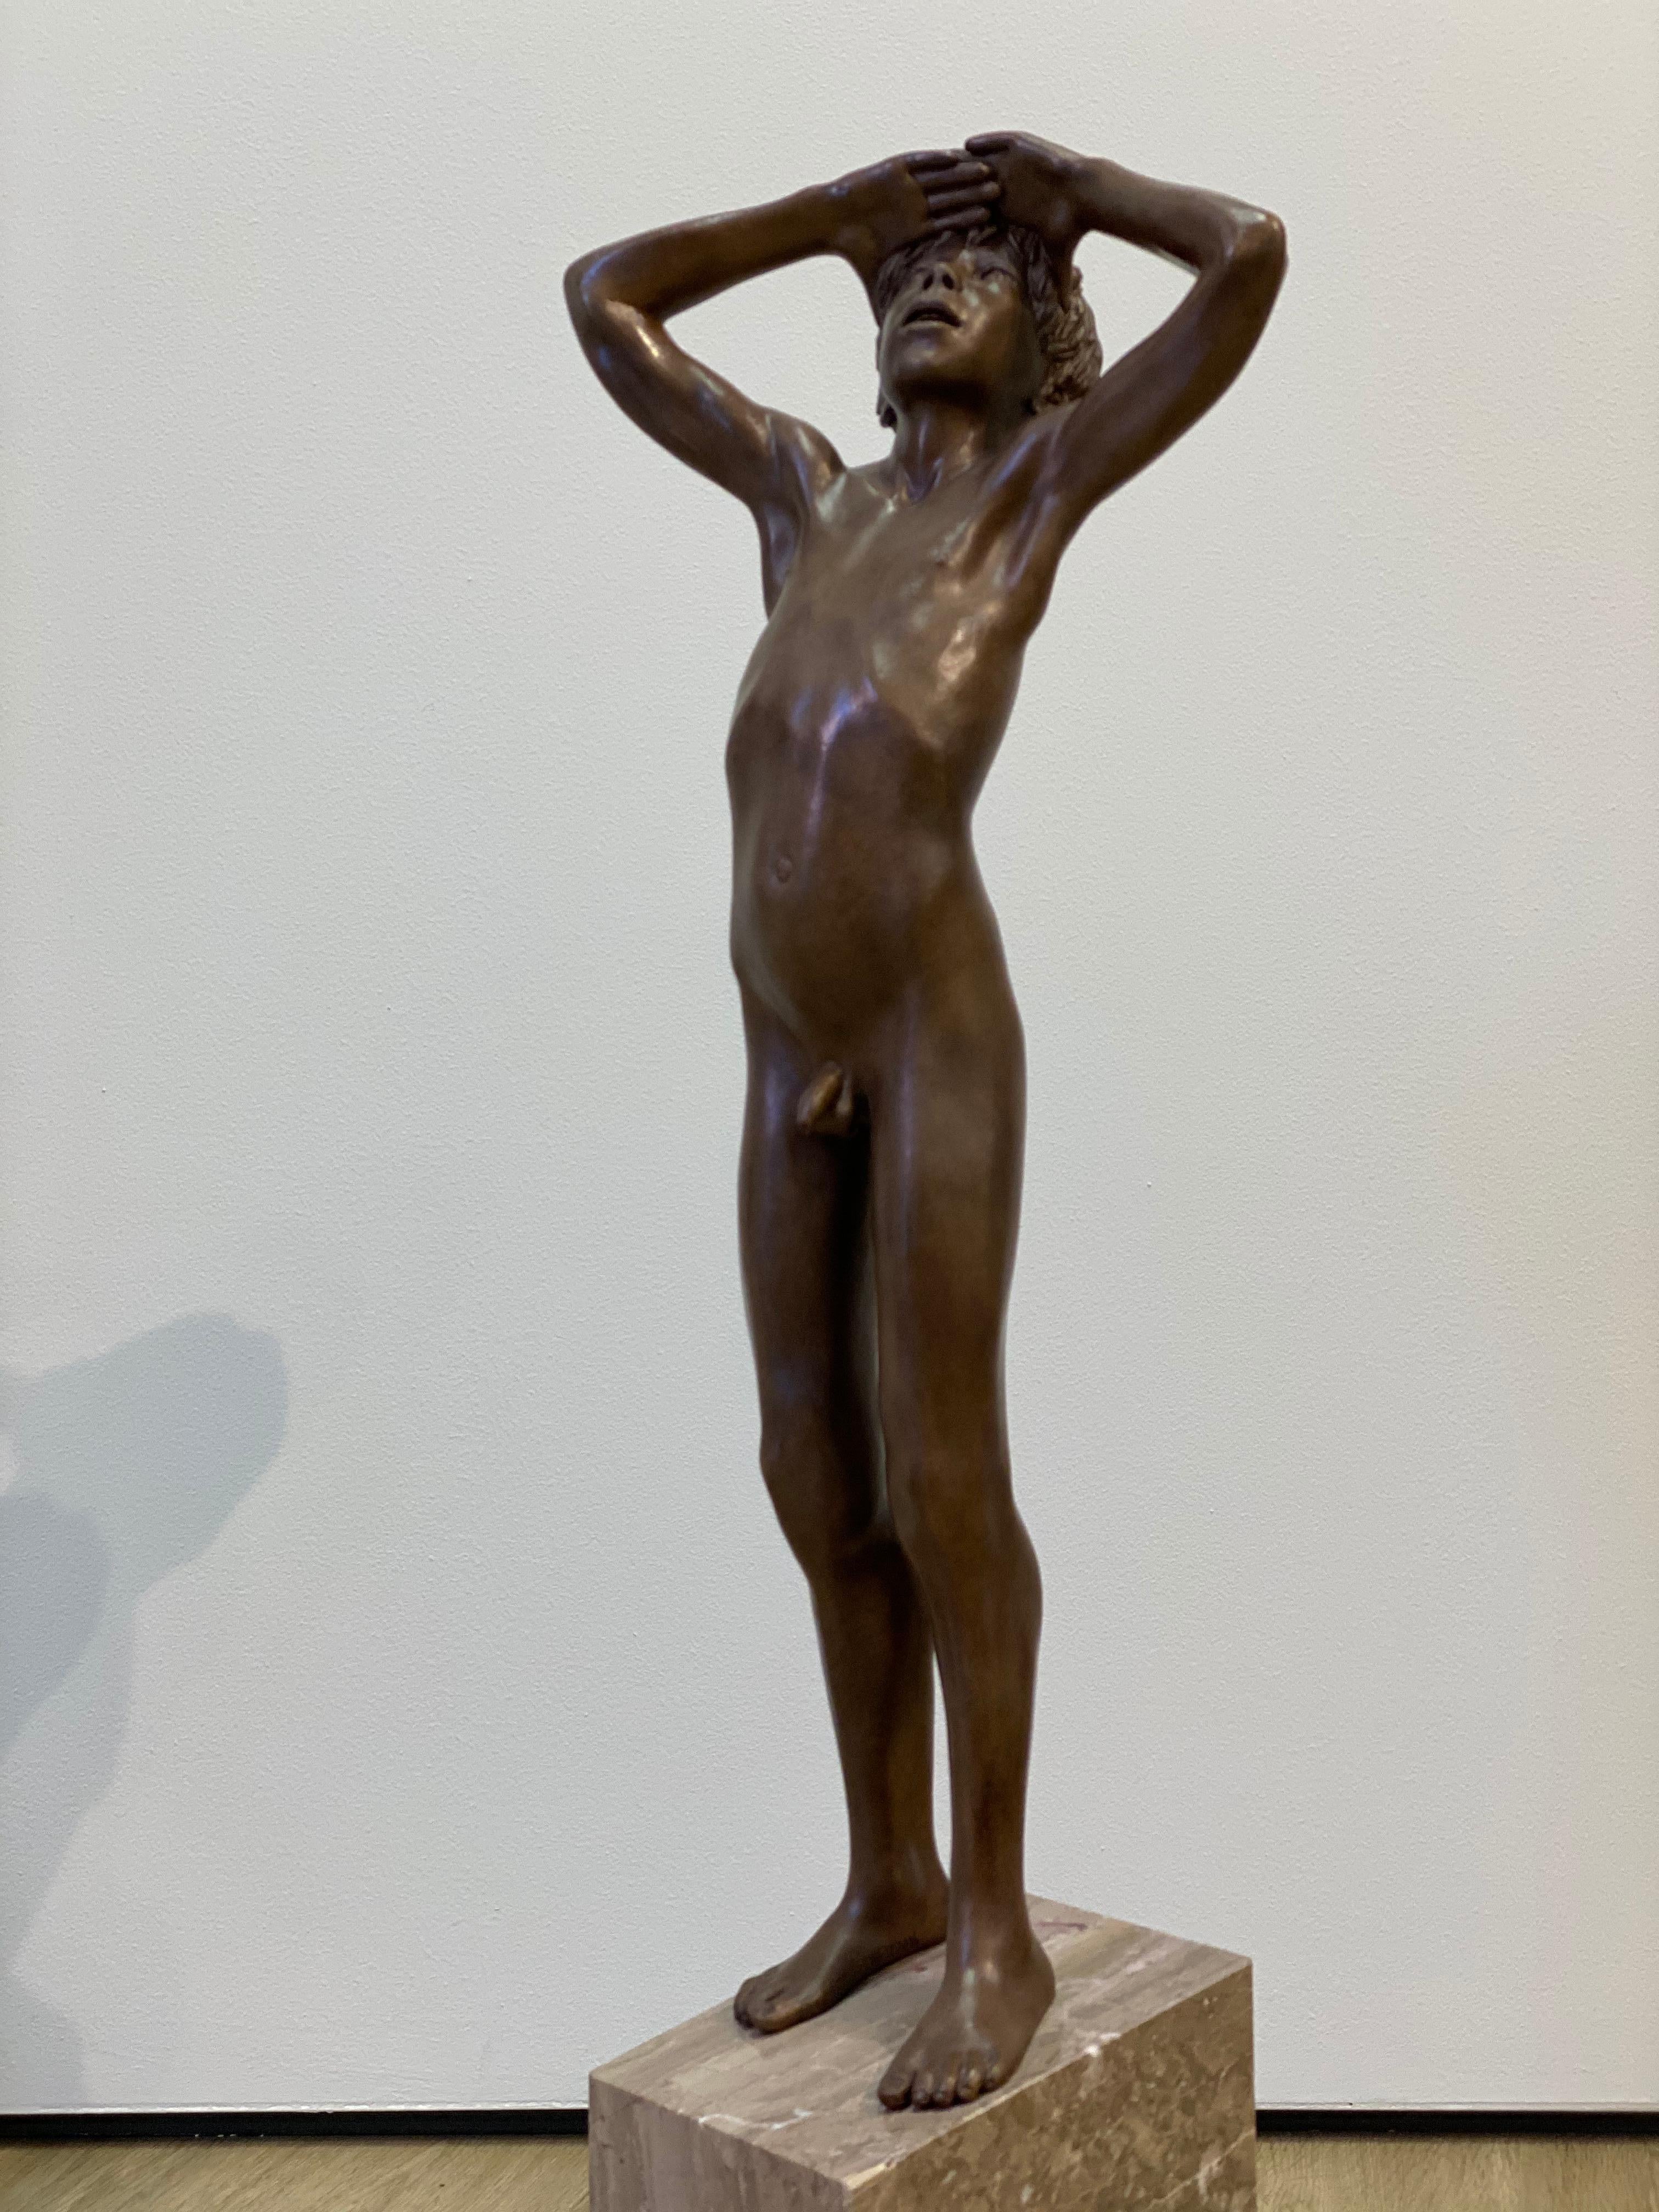 Aquila- Zeitgenössische realistische Bronzeskulptur eines nackten Jungen aus dem 21. Jahrhundert  – Sculpture von Wim van der Kant